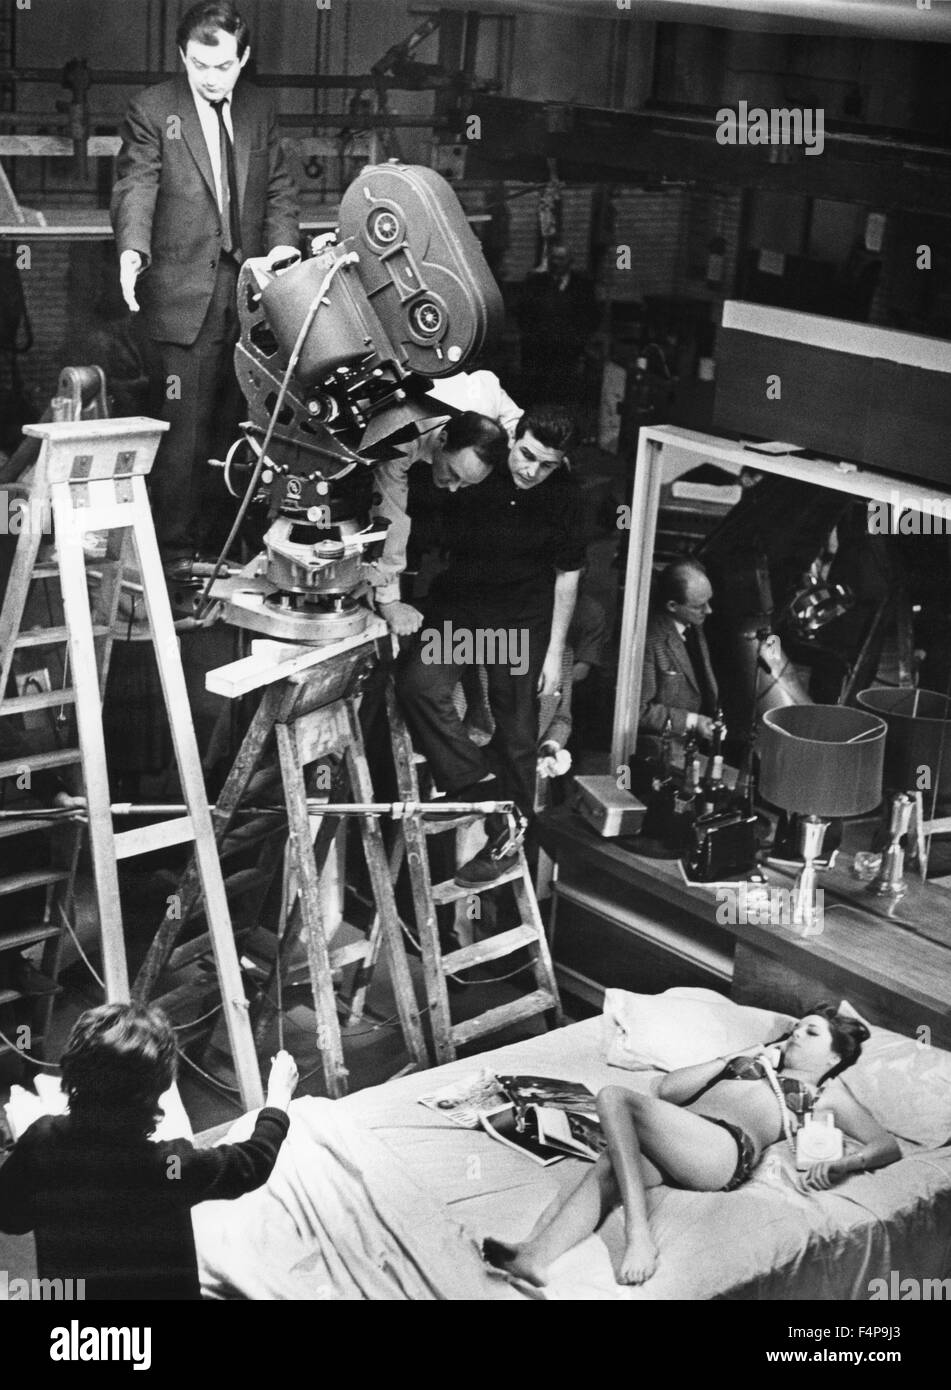 Le Dr Folamour de Stanley Kubrick / 1964 réalisé par Stanley Kubrick Banque D'Images